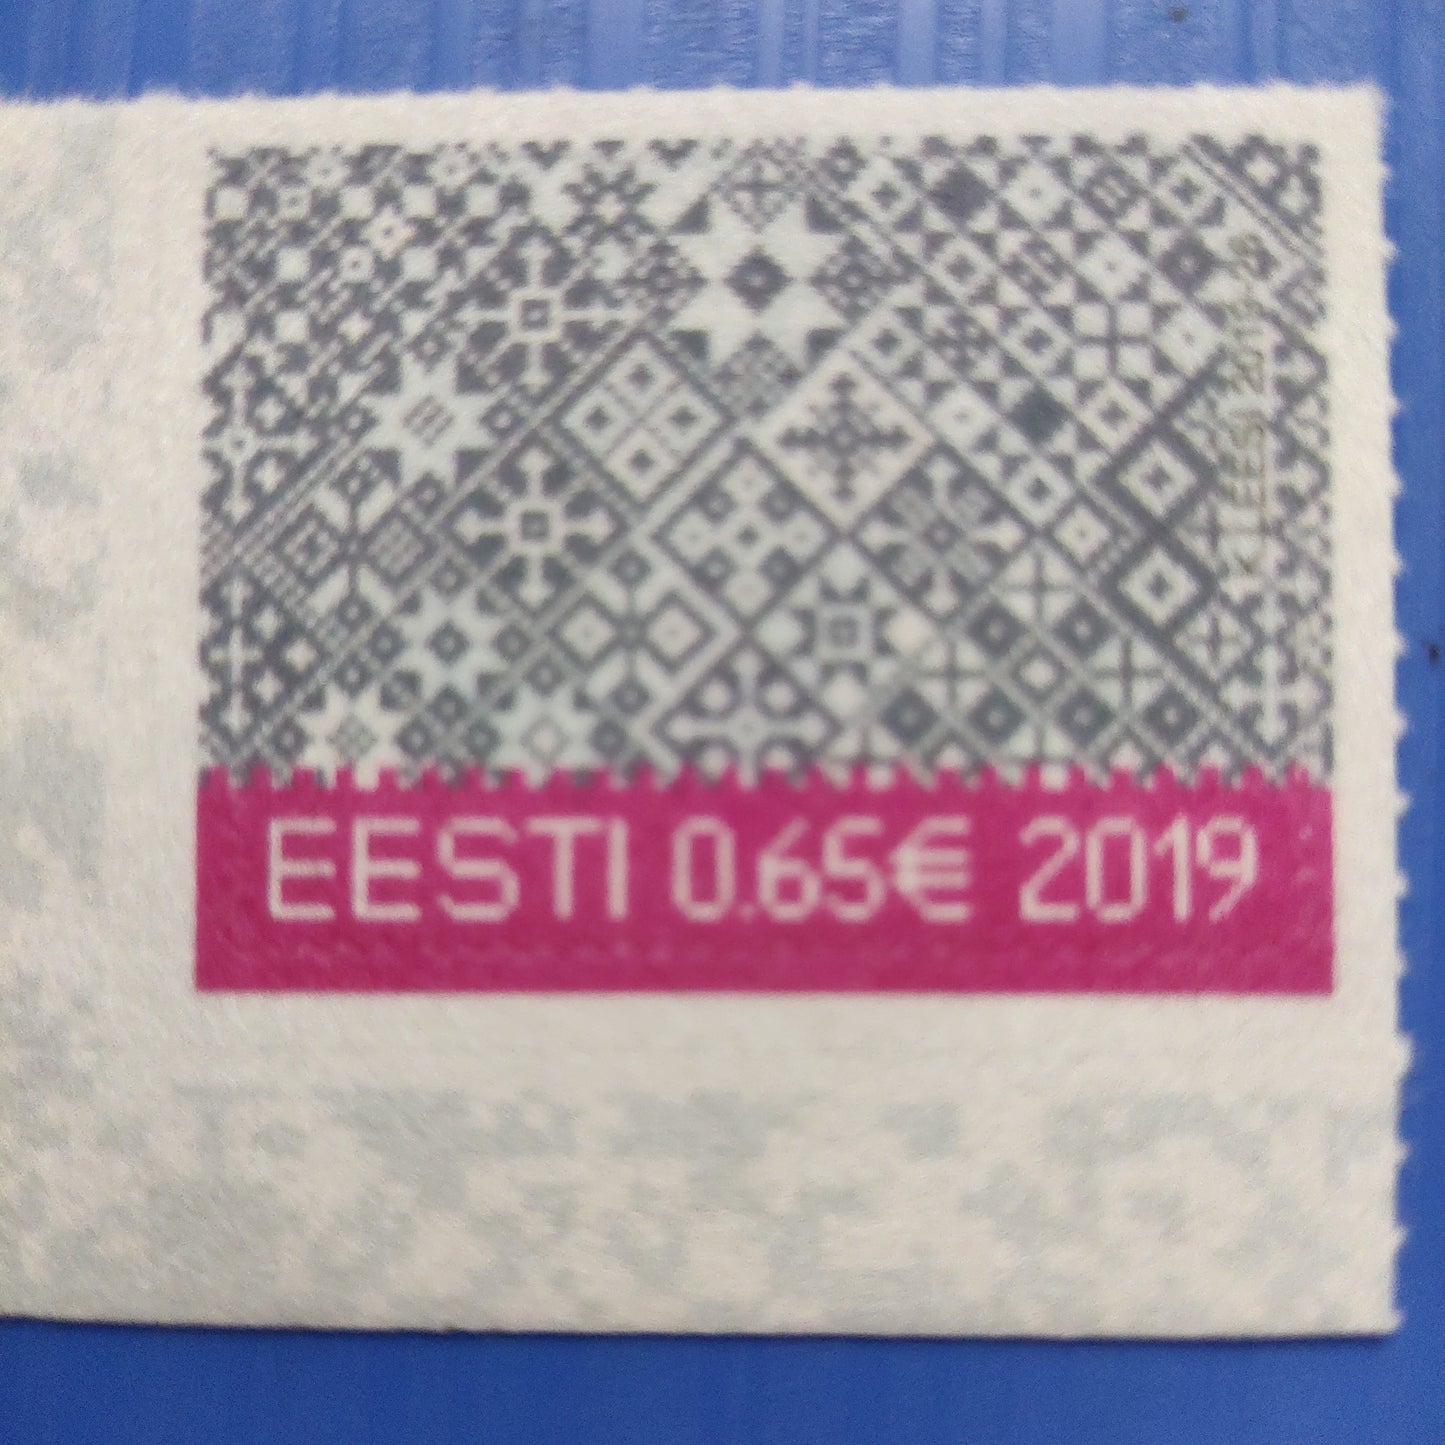 क्रिसमस 2019 पर एस्टोनिया मखमली टिकट।